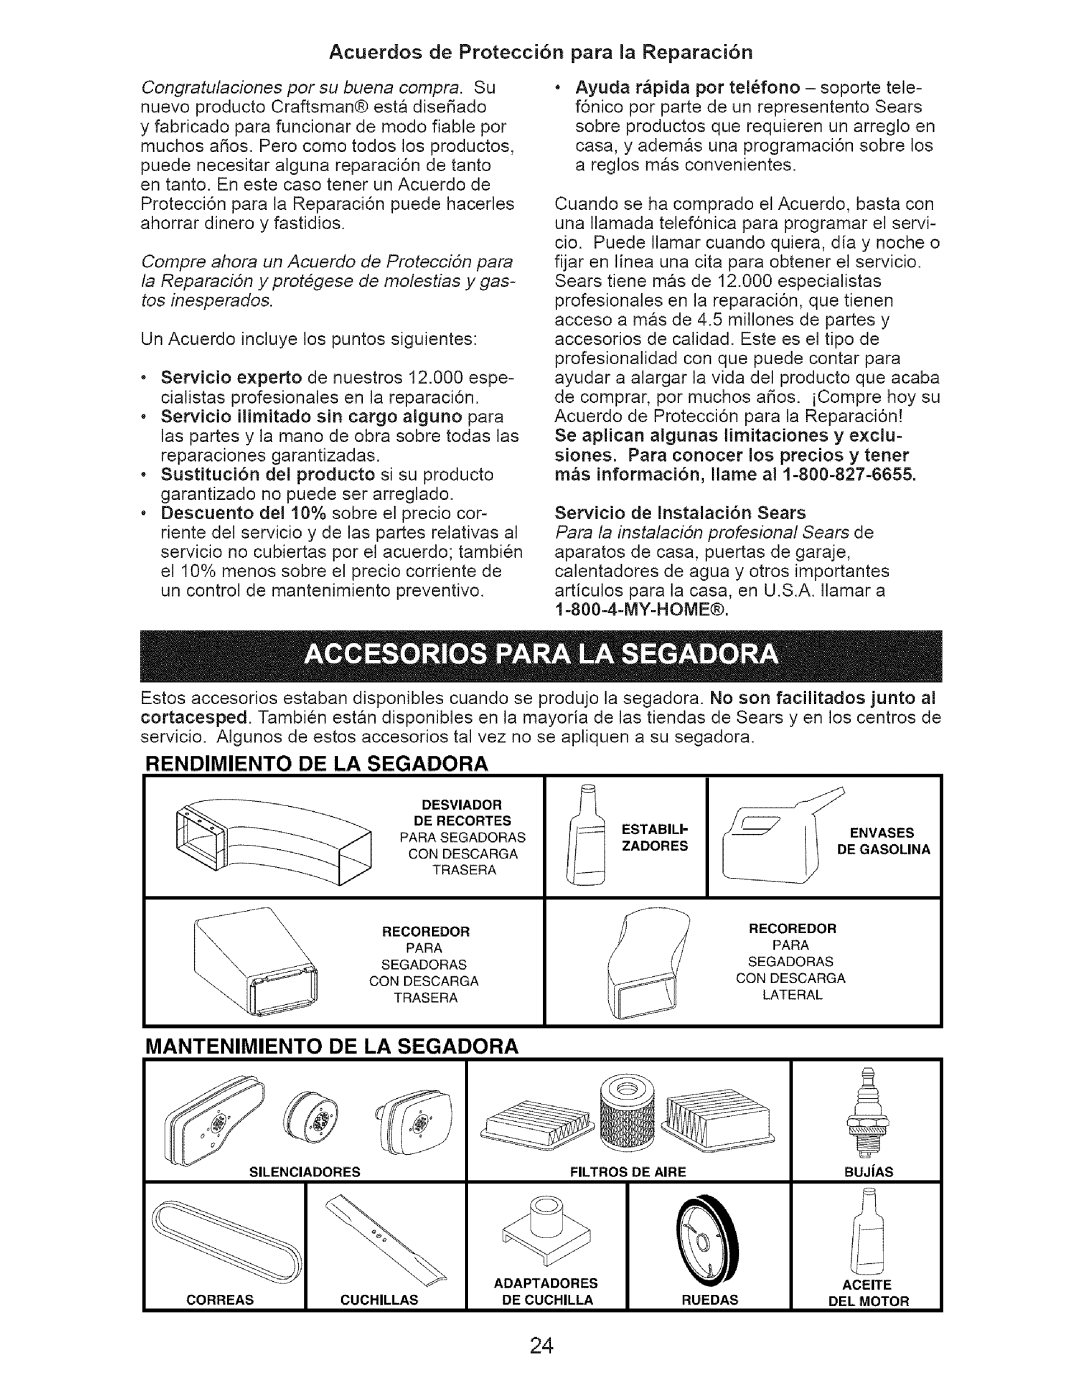 Craftsman 917-371813 manual Mantenimiento De La Segadora, Rendimiento De La Segadora 